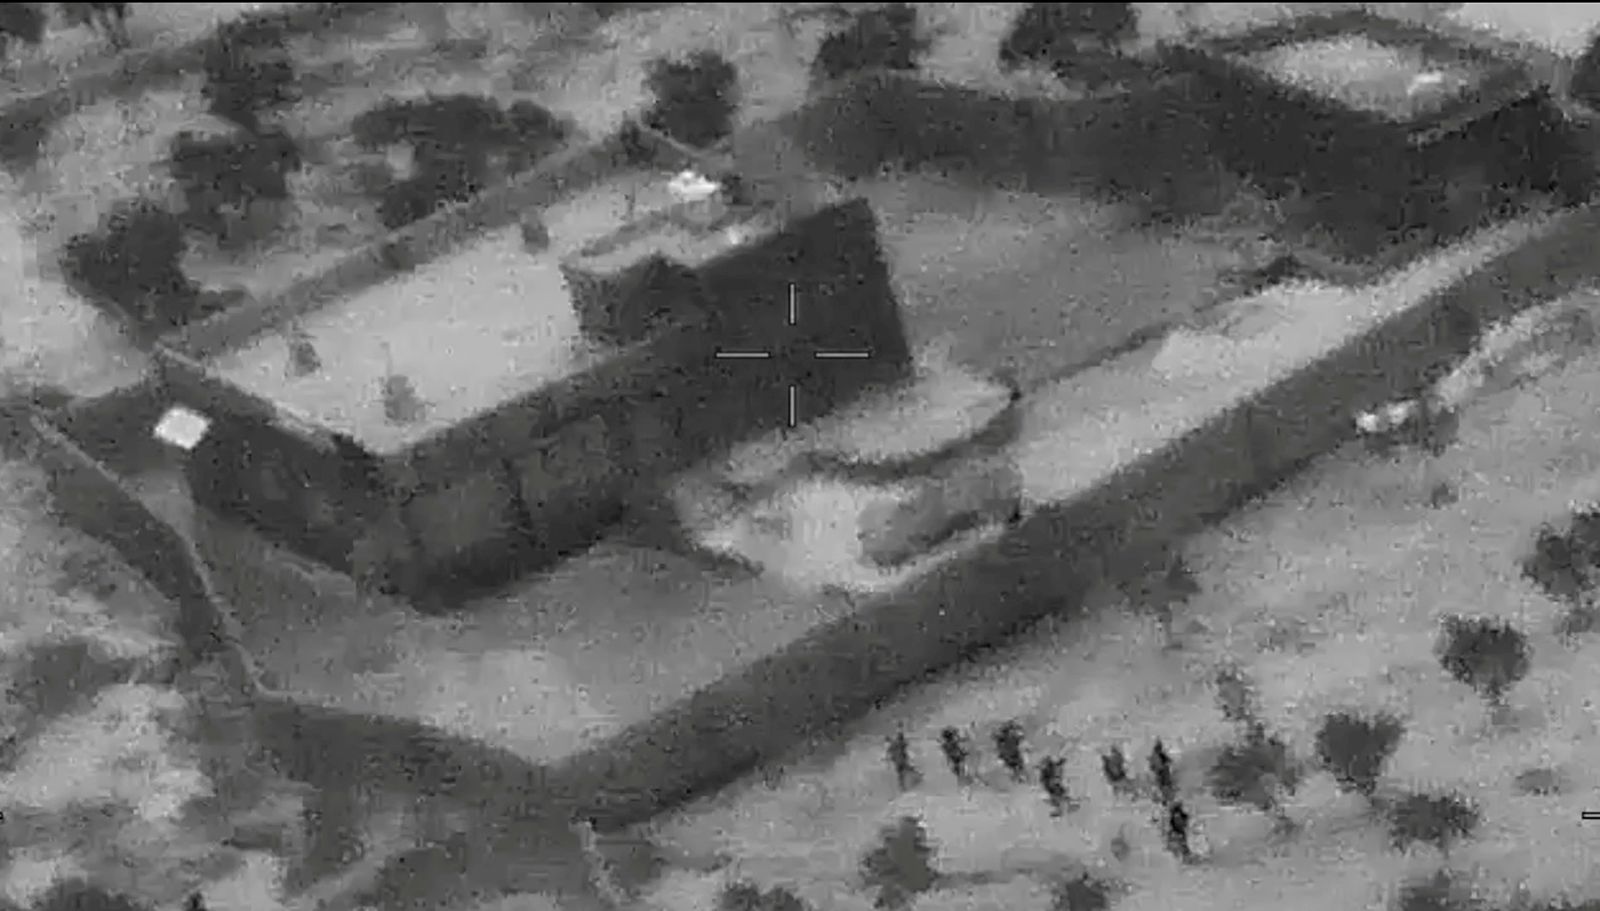 صور ثابتة من فيديو تم تصويره خلال عملية أميركية أسفرت عن مقتل زعيم تنظيم داعش أبوبكر البغدادي، وذلك إثر غارة لقوات أميركية خاصة في منطقة إدلب السورية 26 أكتوبر 2019 - via REUTERS